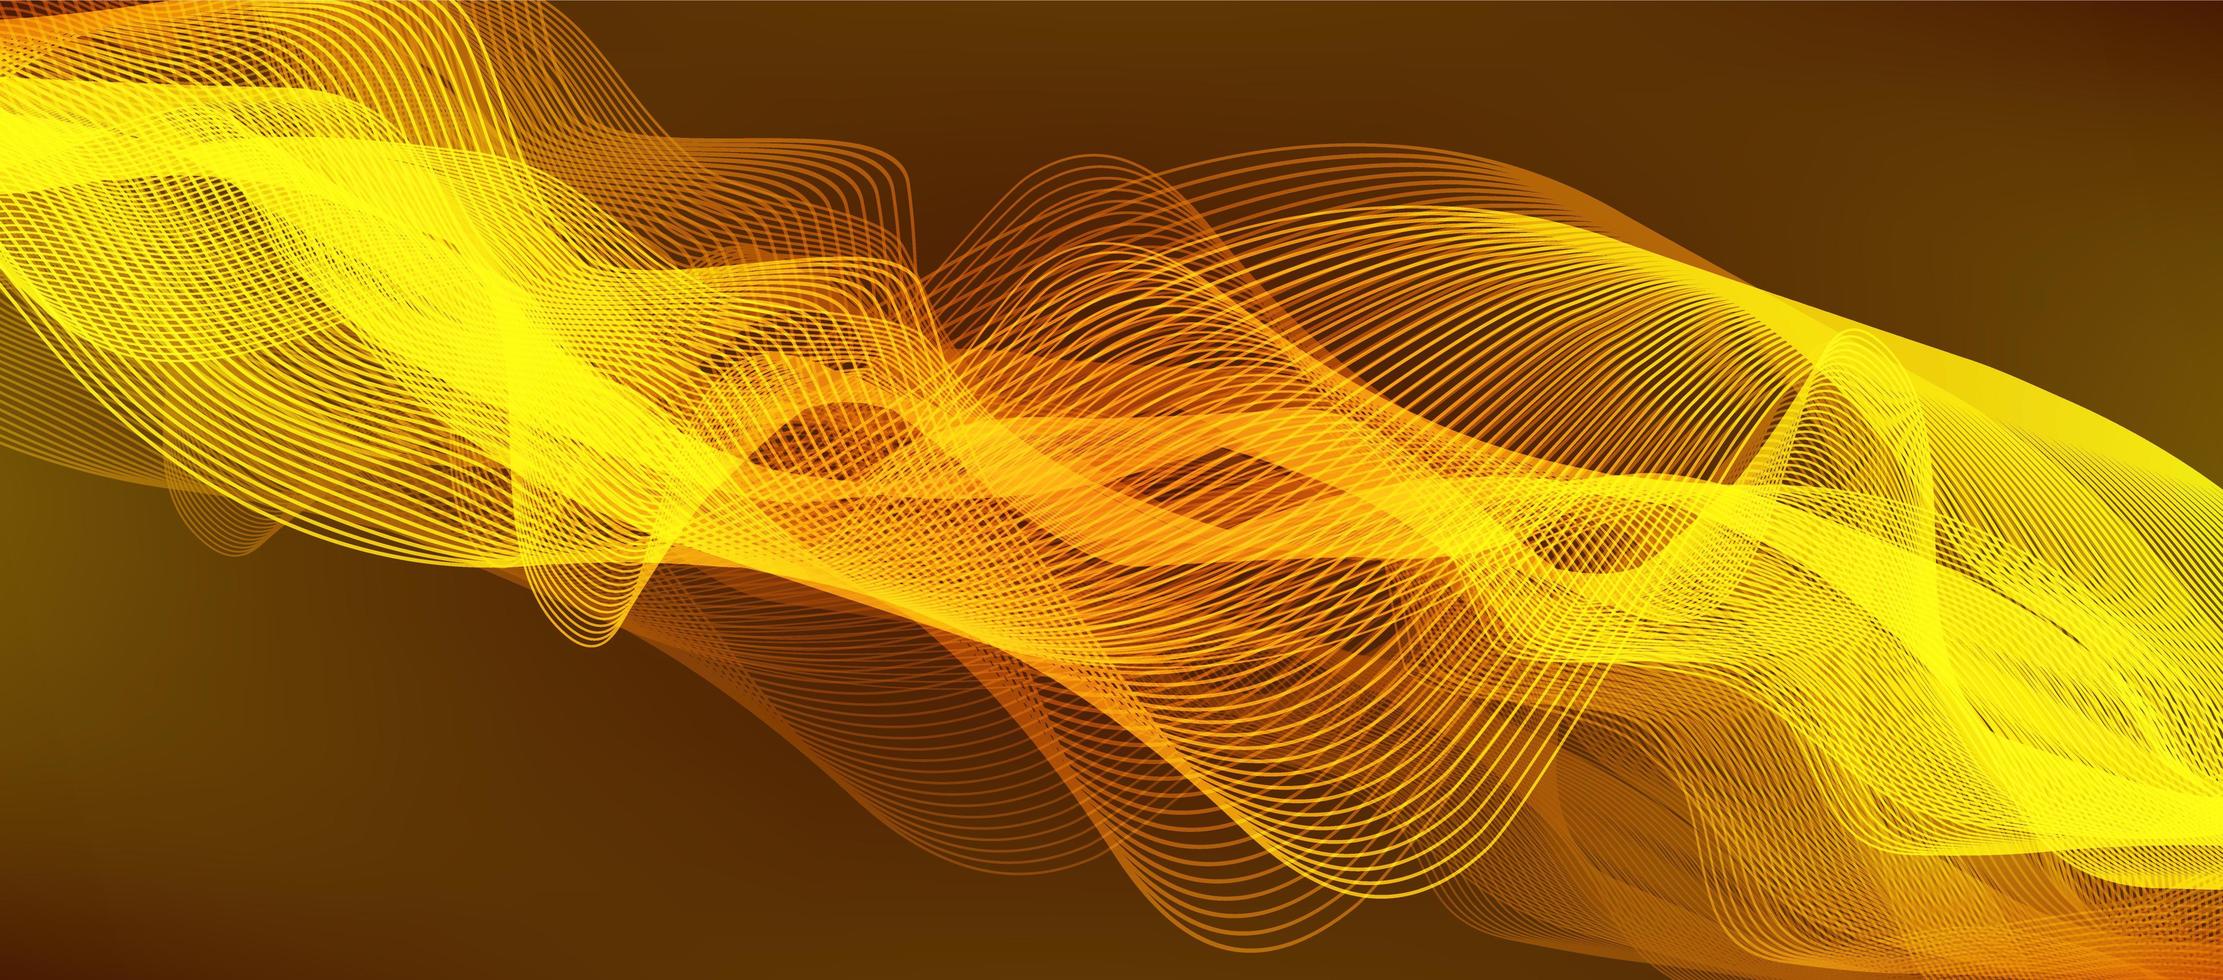 Gold digitaler Schallwellenhintergrund, Musik- und Hi-Tech-Diagrammkonzept, Entwurf für Musikstudio und Wissenschaft, Vektorillustration. vektor